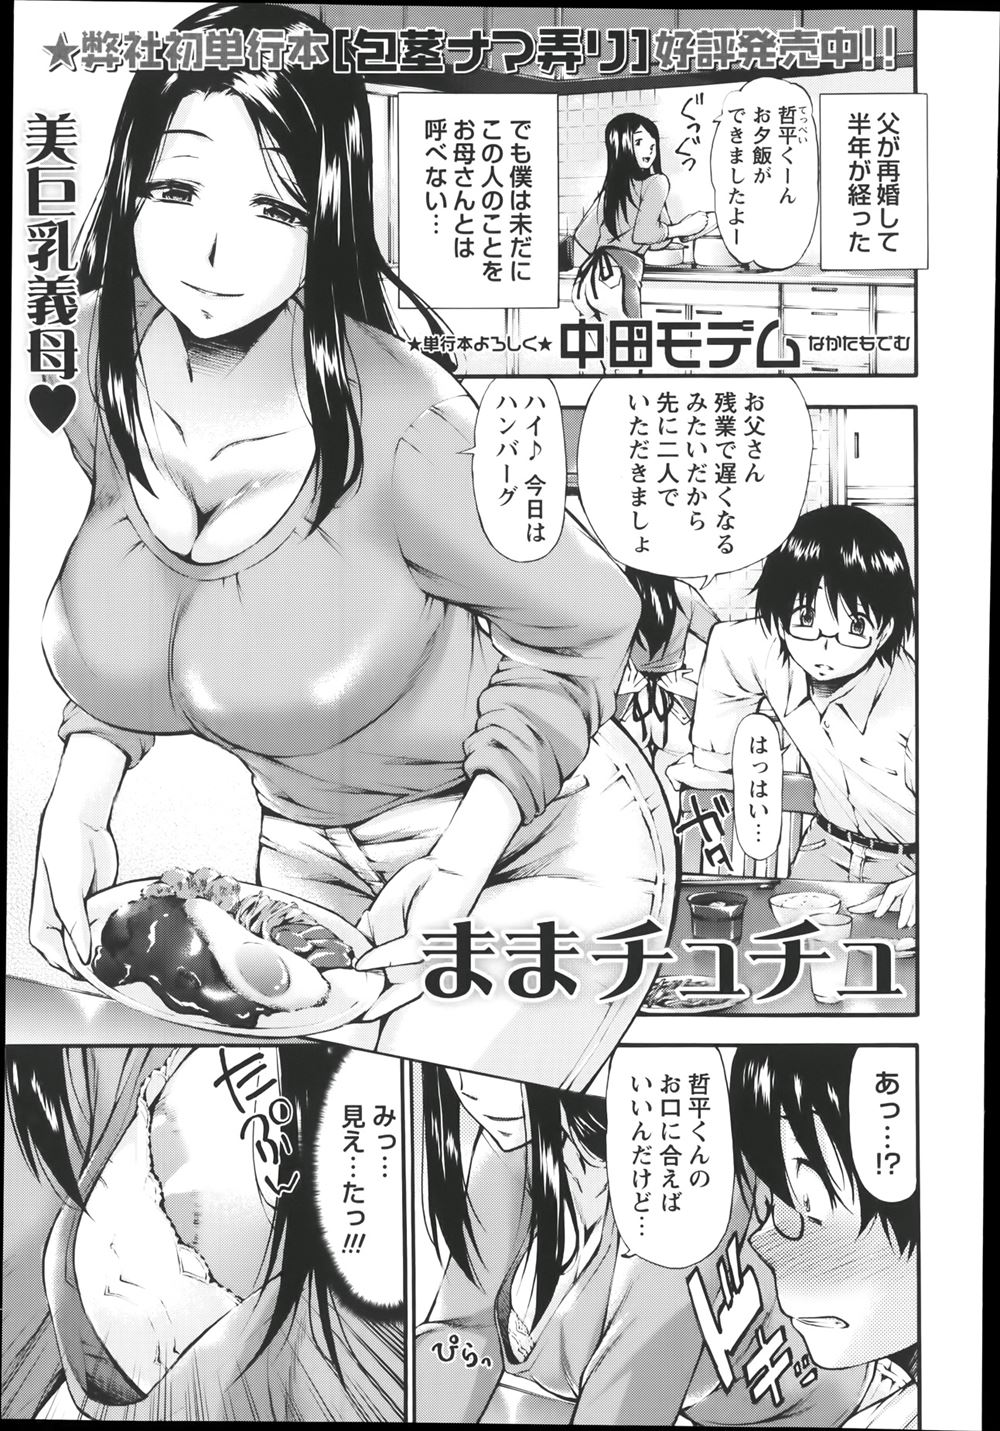 【エロ漫画】美人巨乳義母の胸チラを見て興奮した息子がお風呂でオナニー。見つかって誘惑され生セックス生中出し・・・